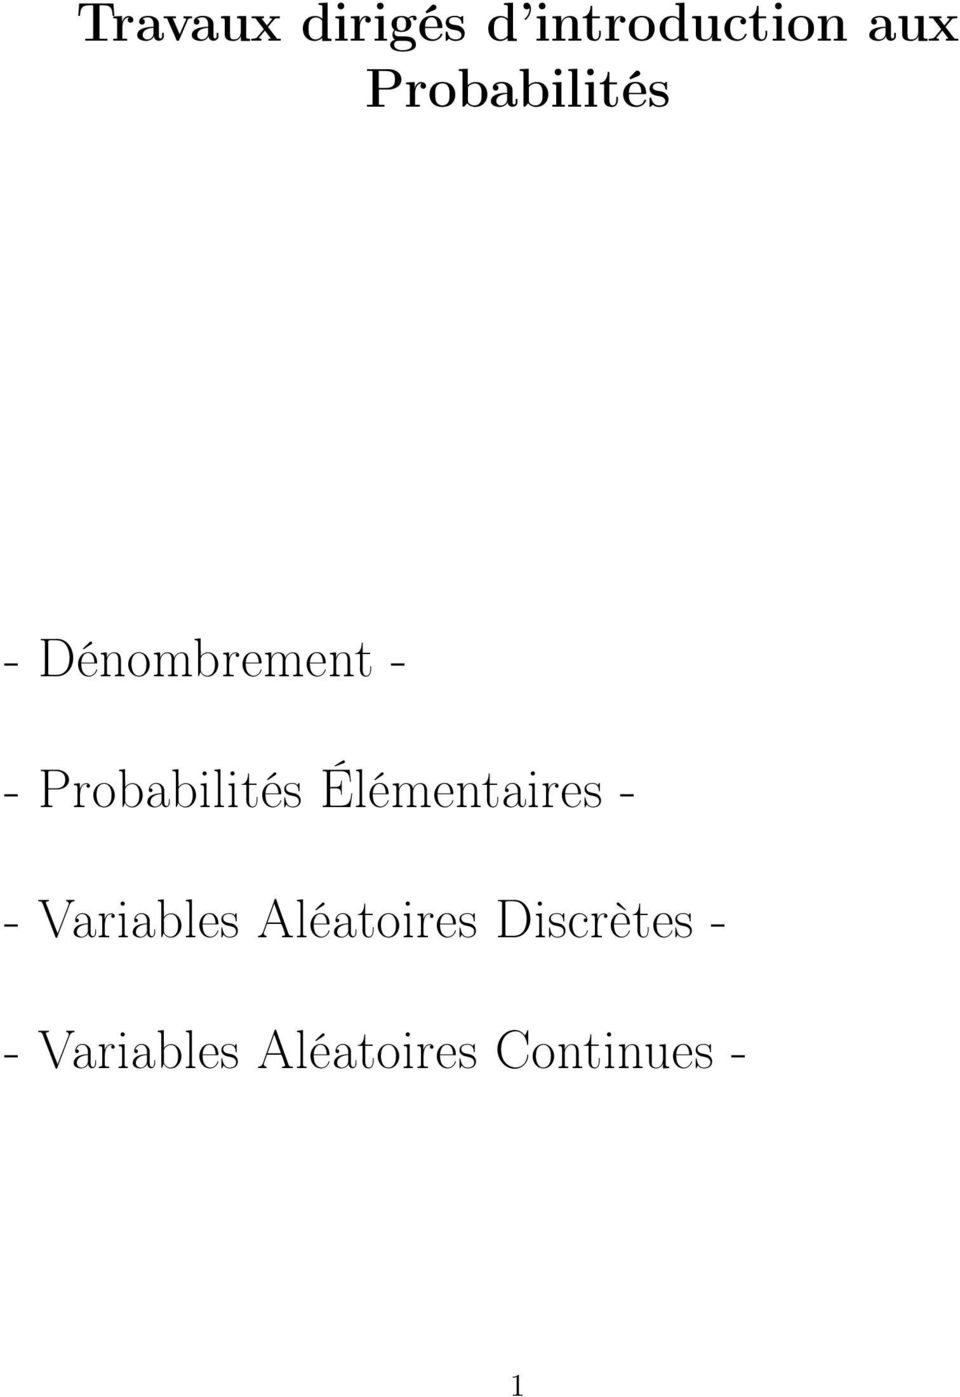 Probabilités Élémentaires - - Variables